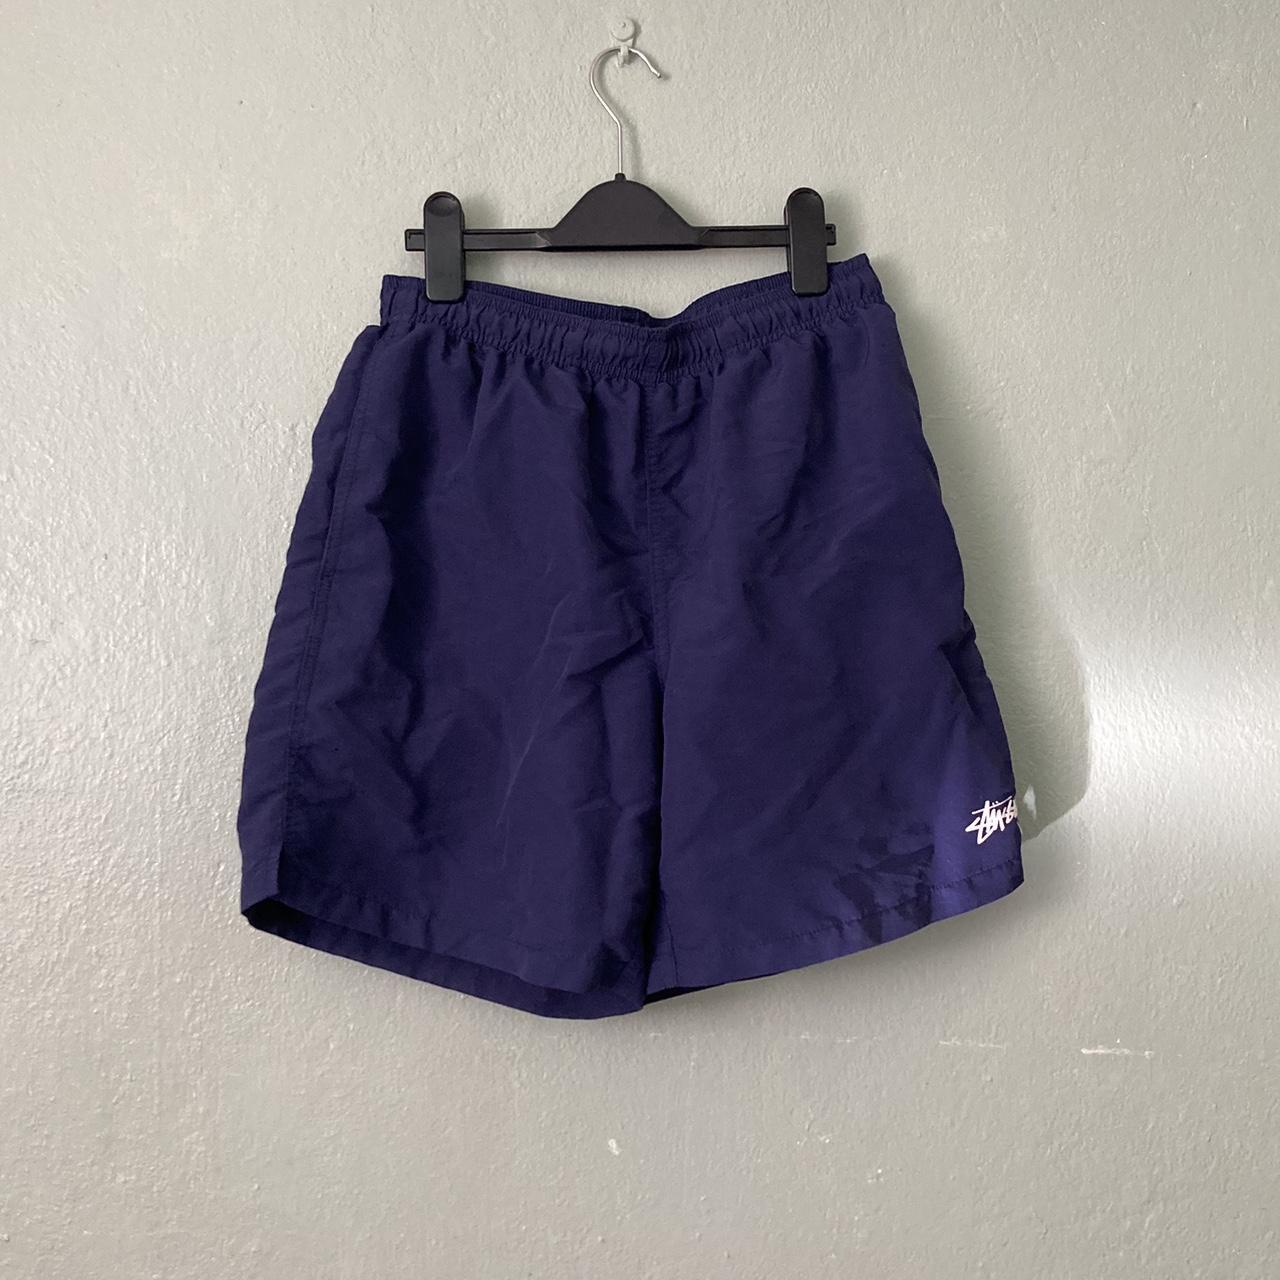 Stüssy Men's Blue and Navy Shorts | Depop